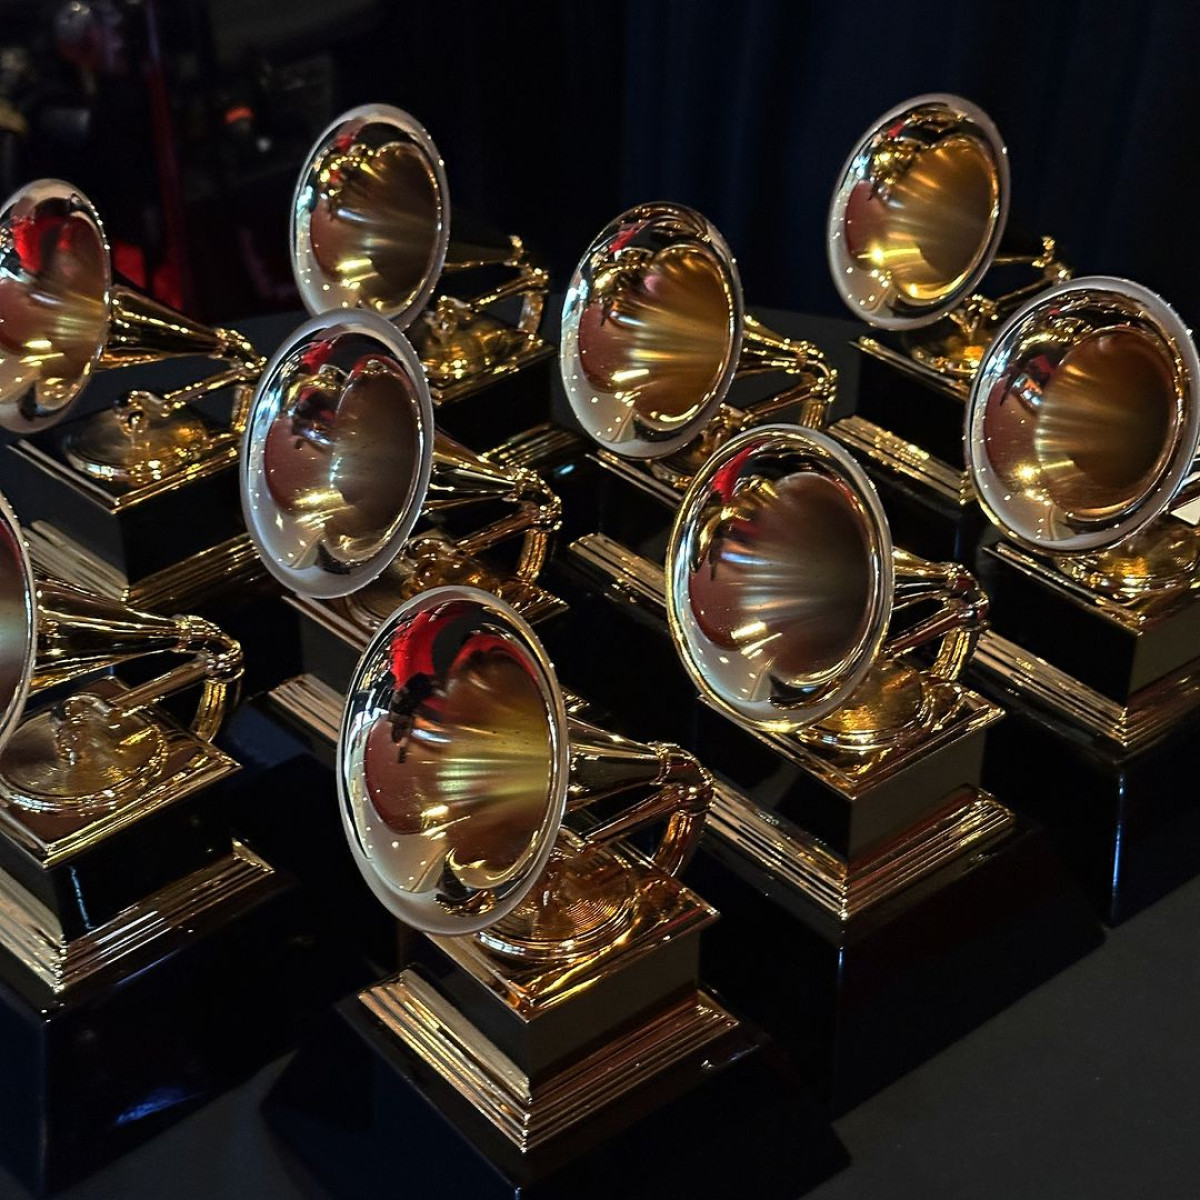 Βραβεία Grammy: Οι καλλιτέχνες με τις περισσότερες νίκες - Ποιος βρίσκεται στην κορυφή με... 32;